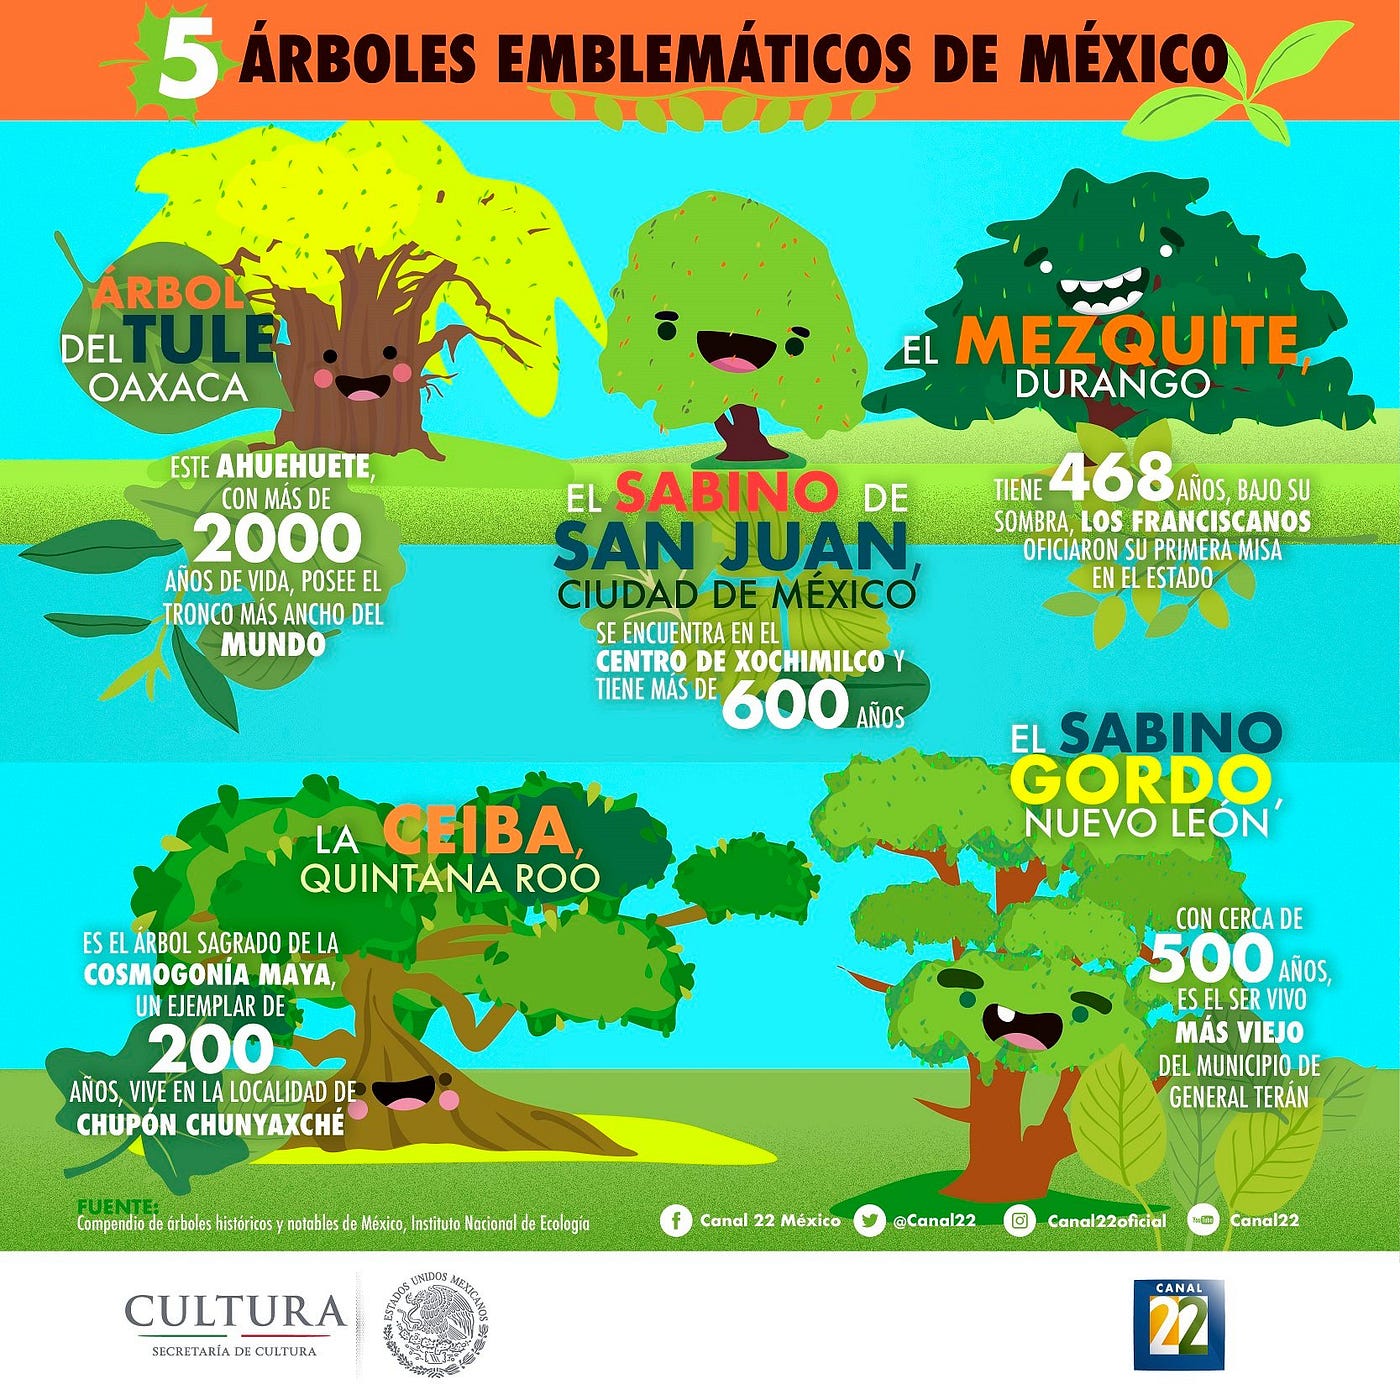 Plantemos árboles nativos de México | by La Libélula México | Medium